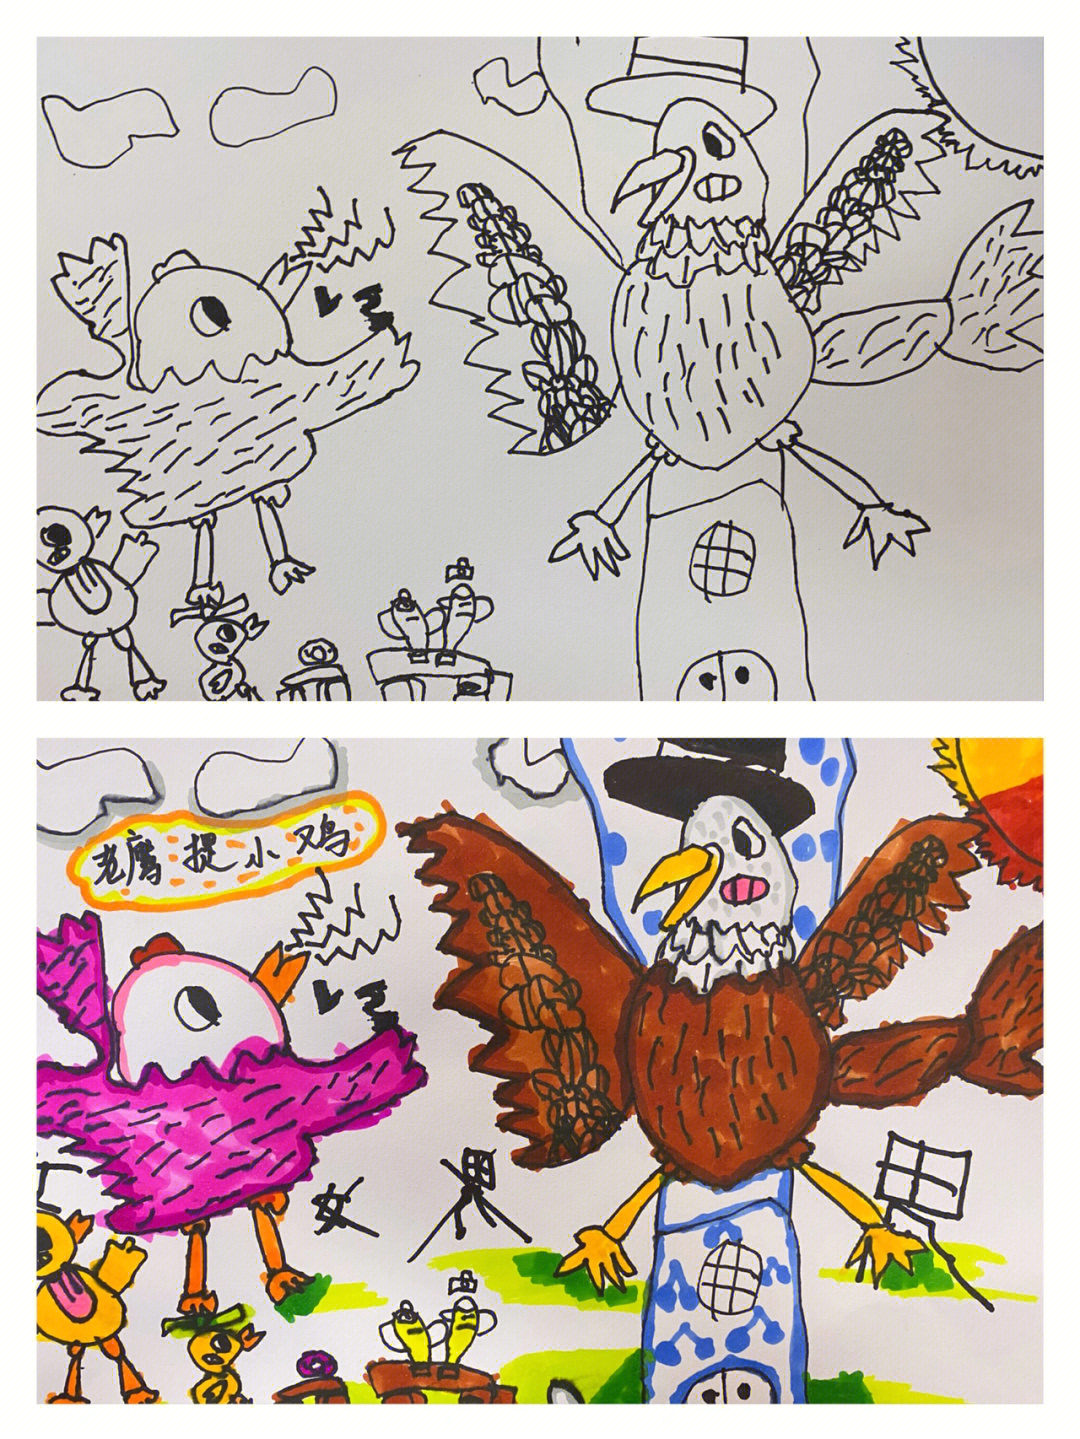 教学目标:1,通过游戏的引导,让孩子们认识老鹰与小鸡的特征,并且绘画